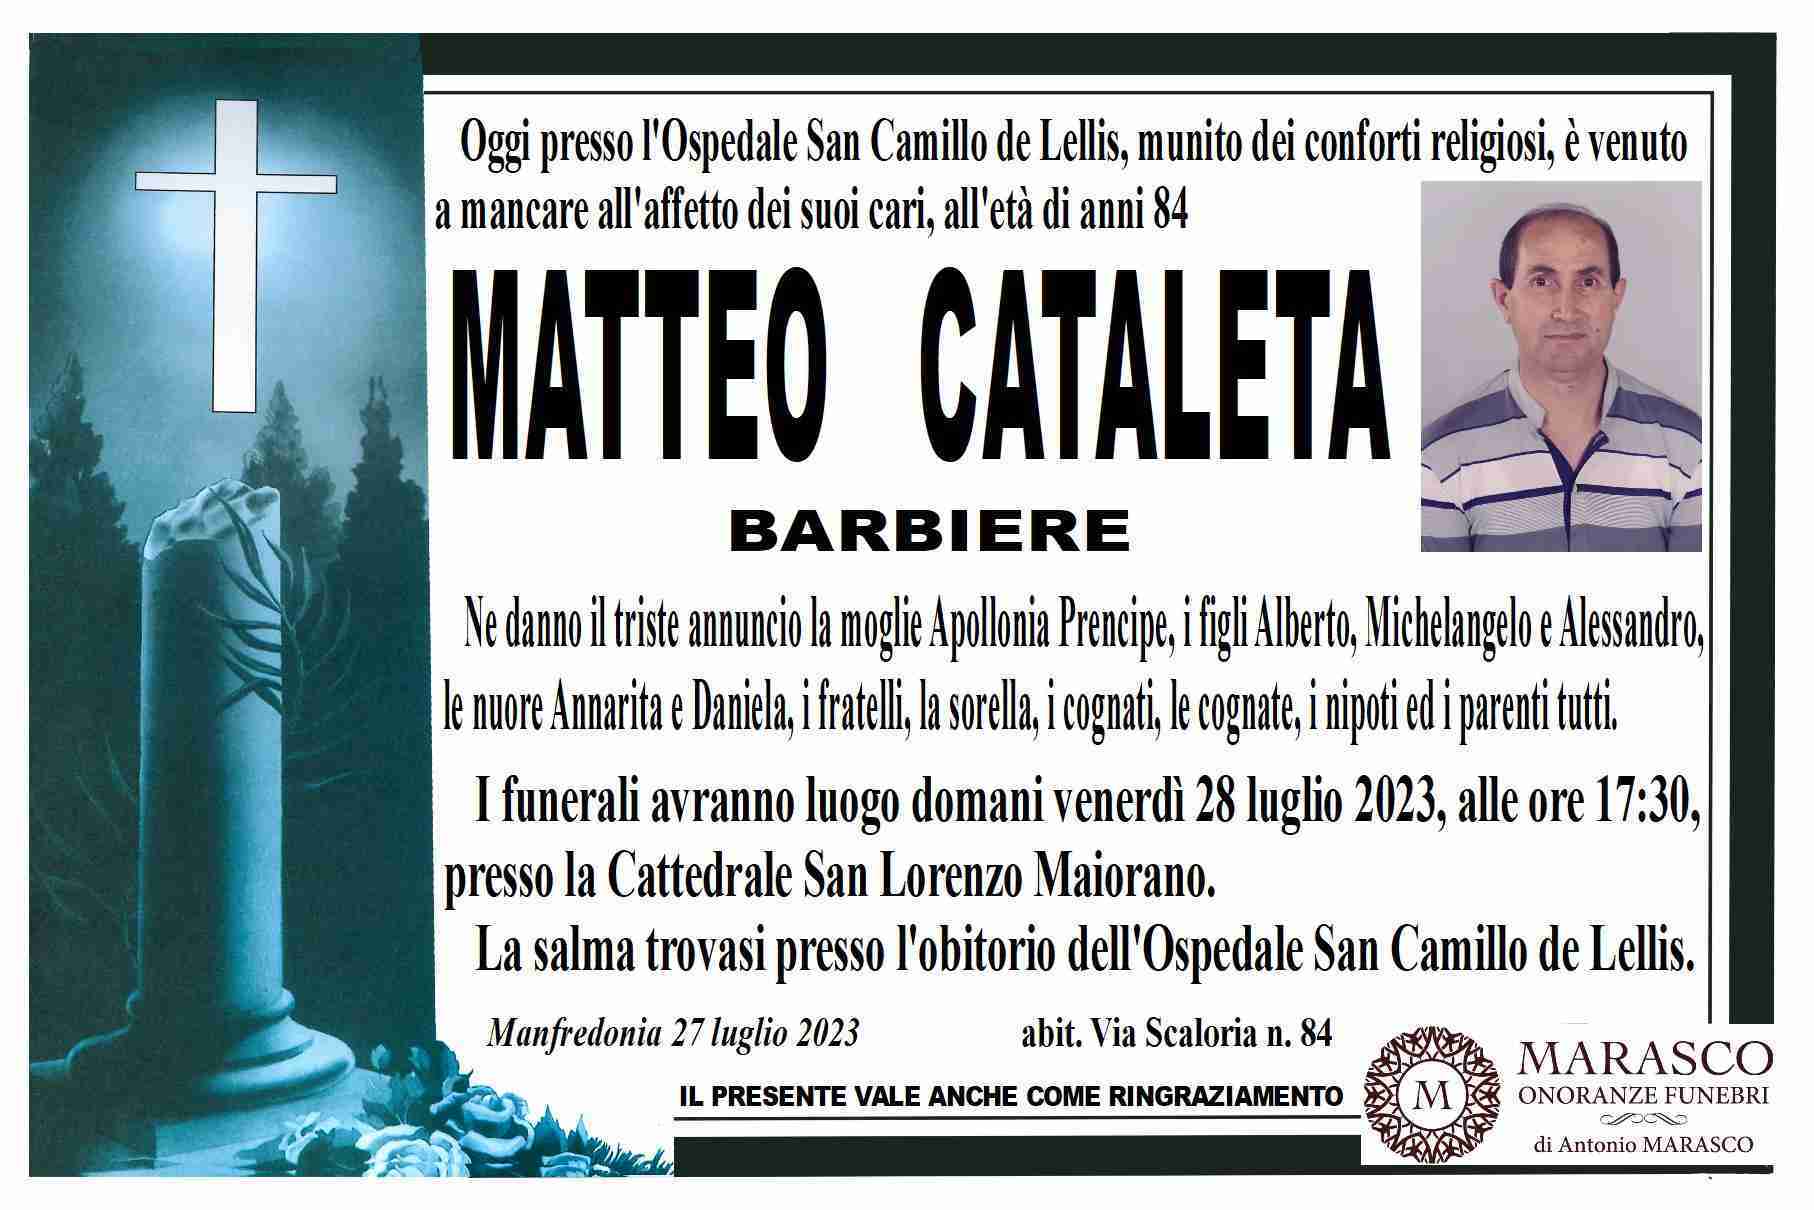 Matteo Cataleta